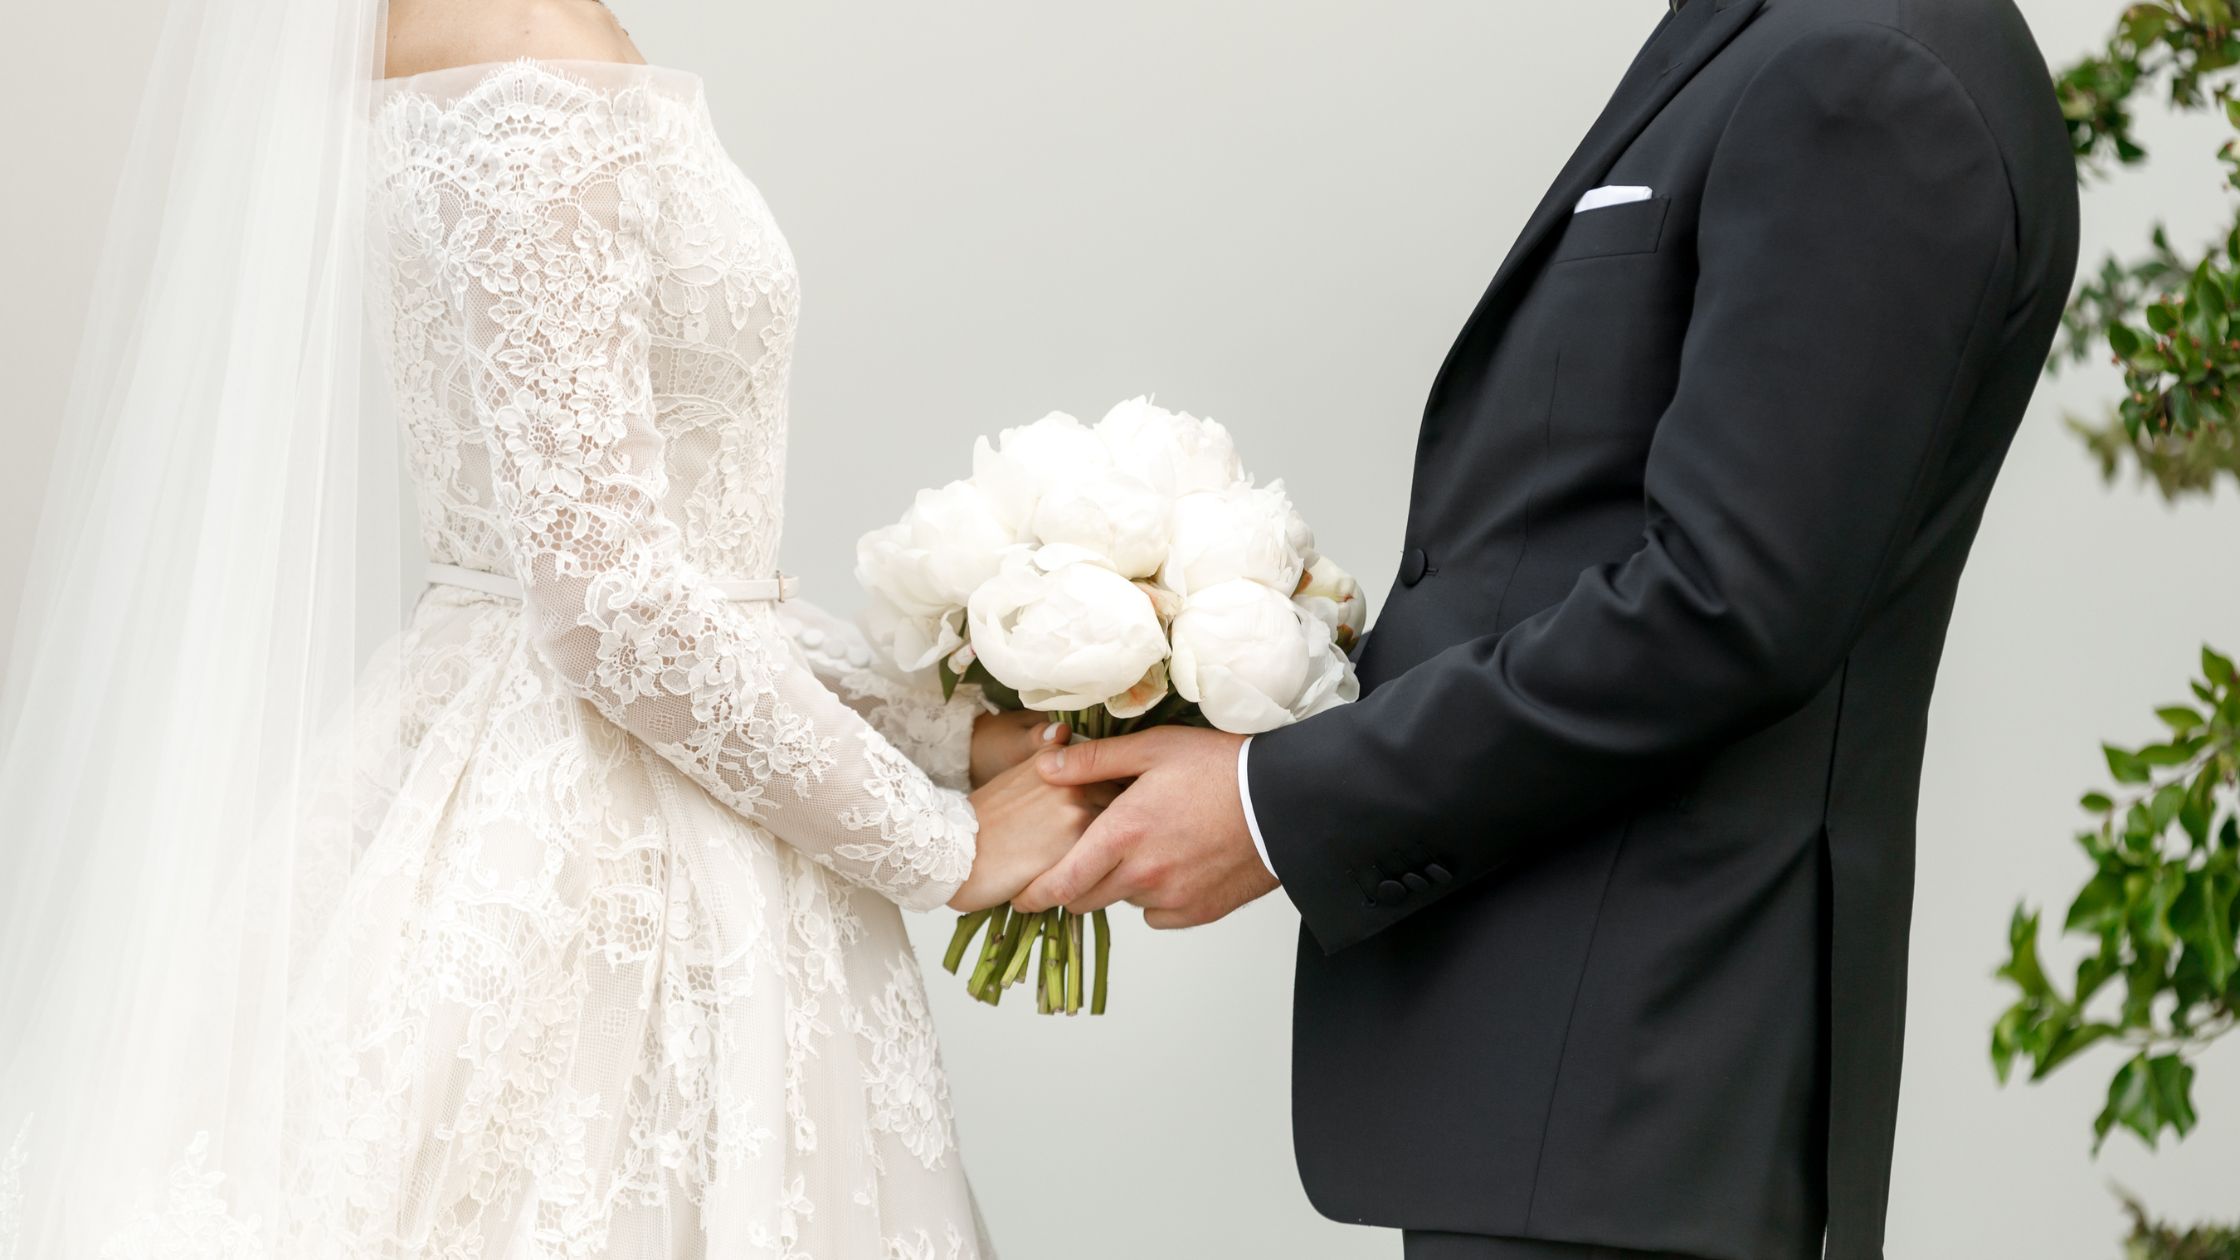 Jaka jest różnica między heiraten i verheiraten?